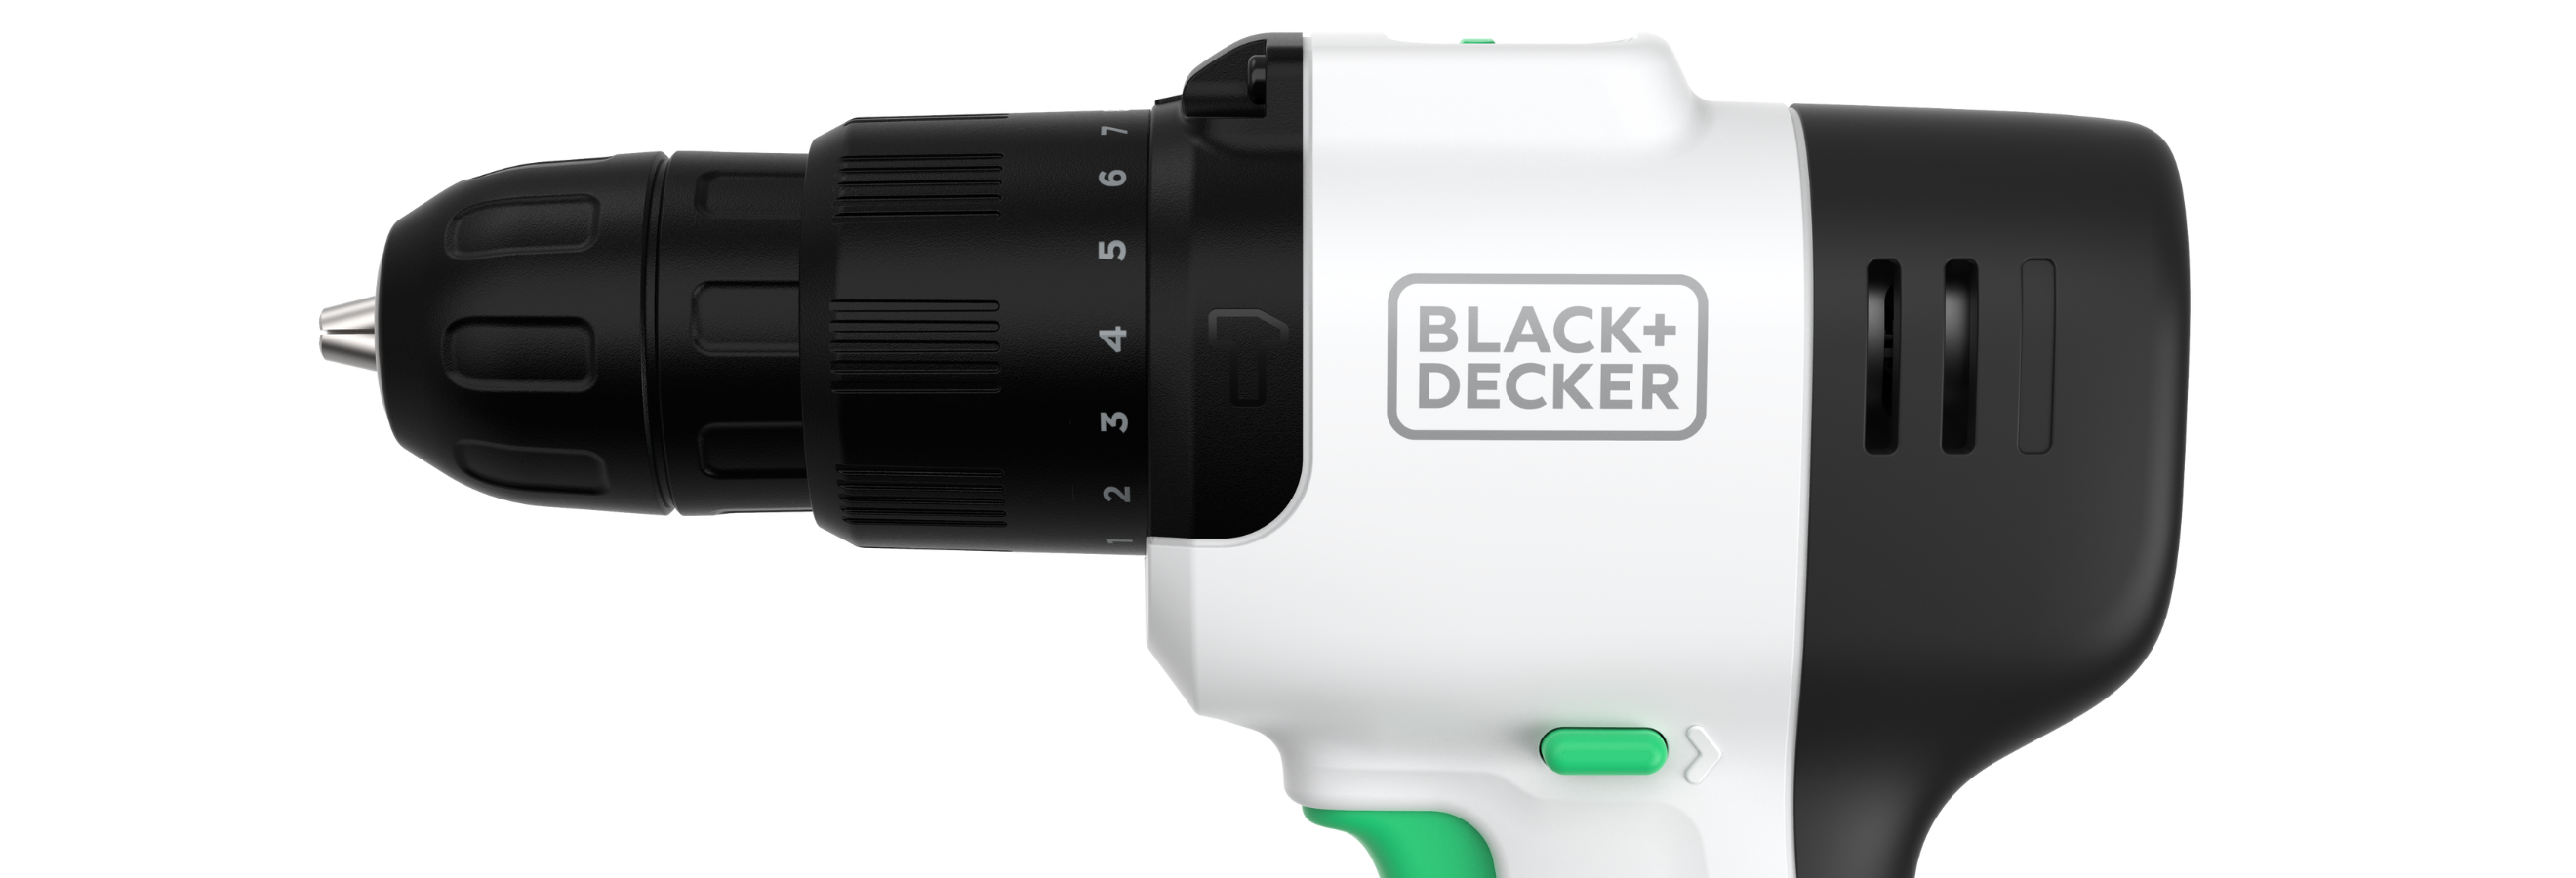 Black+decker Reviva 12V Hammer Drill (REVCHD12C)